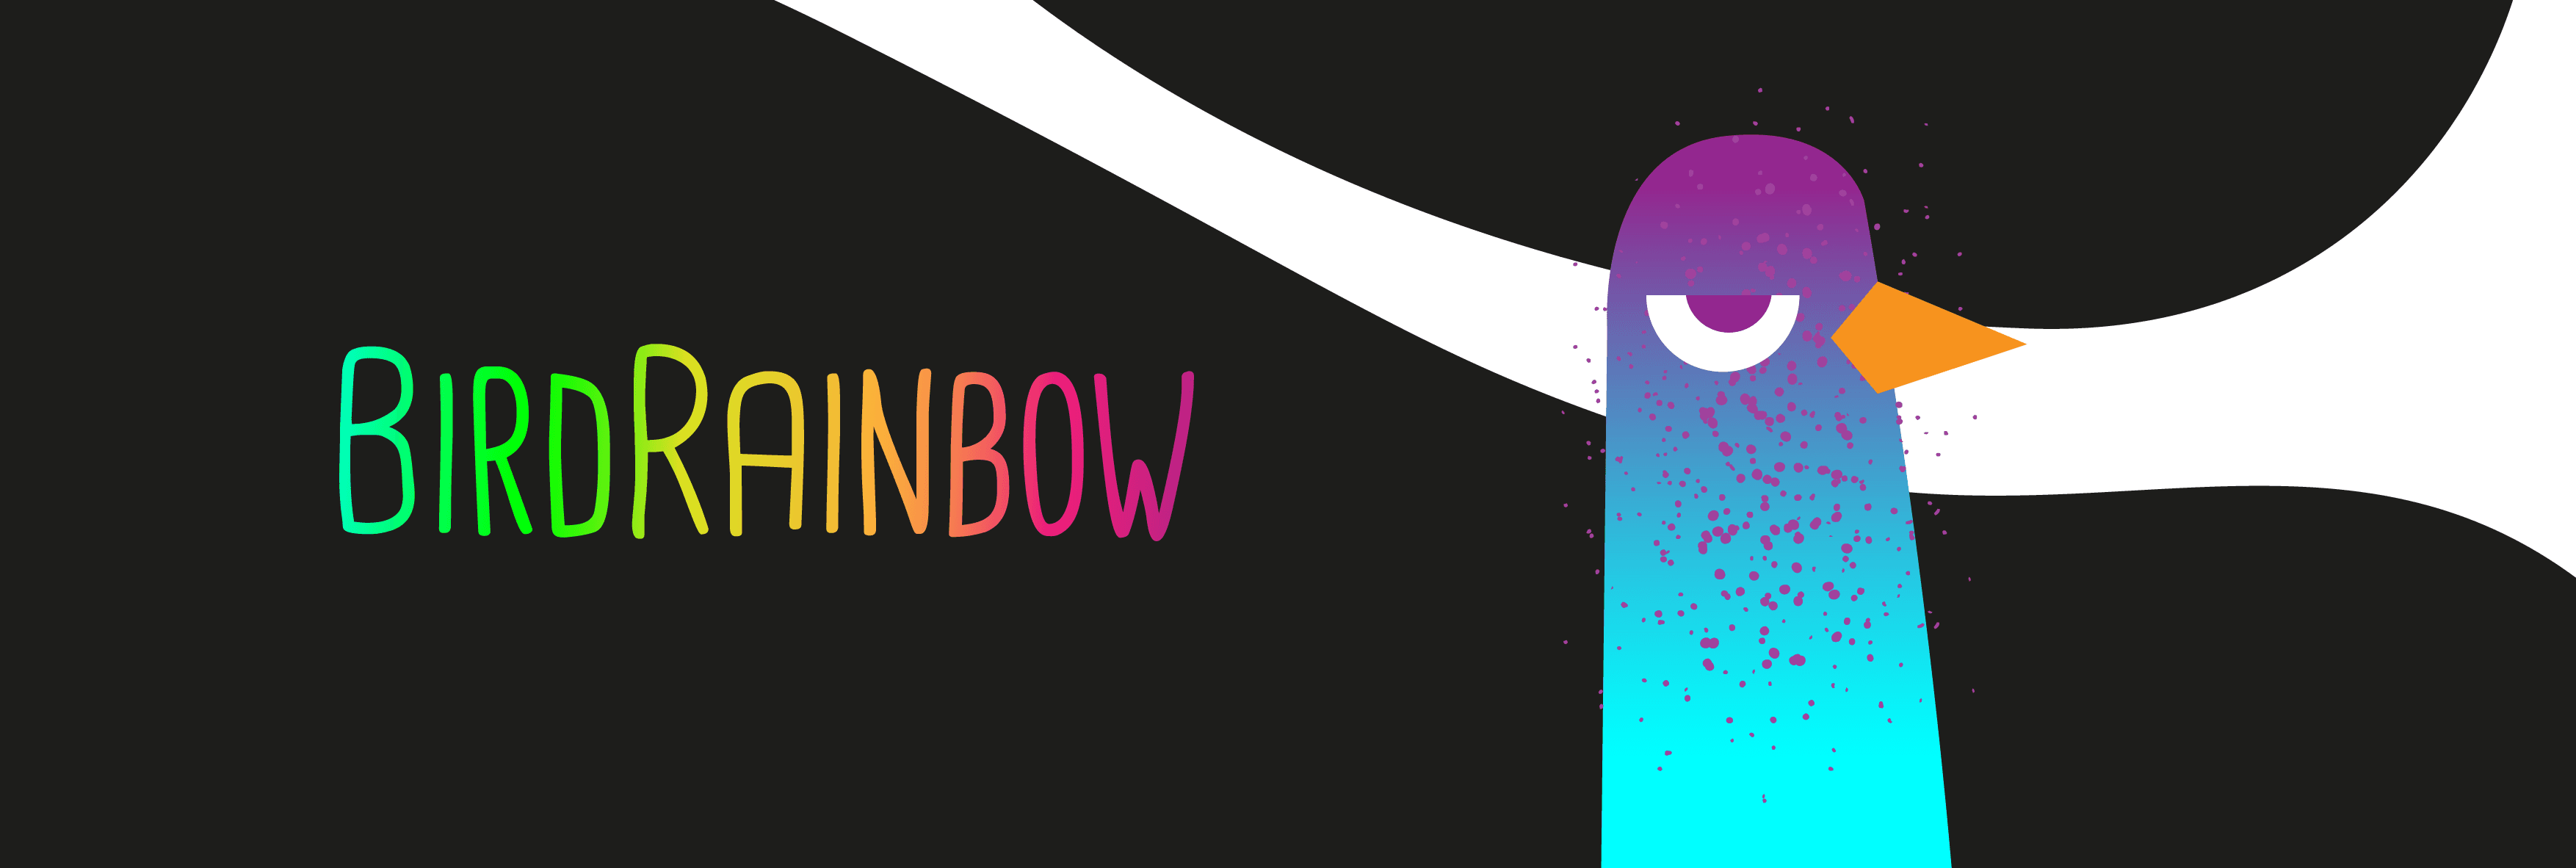 BirdRainbow banner